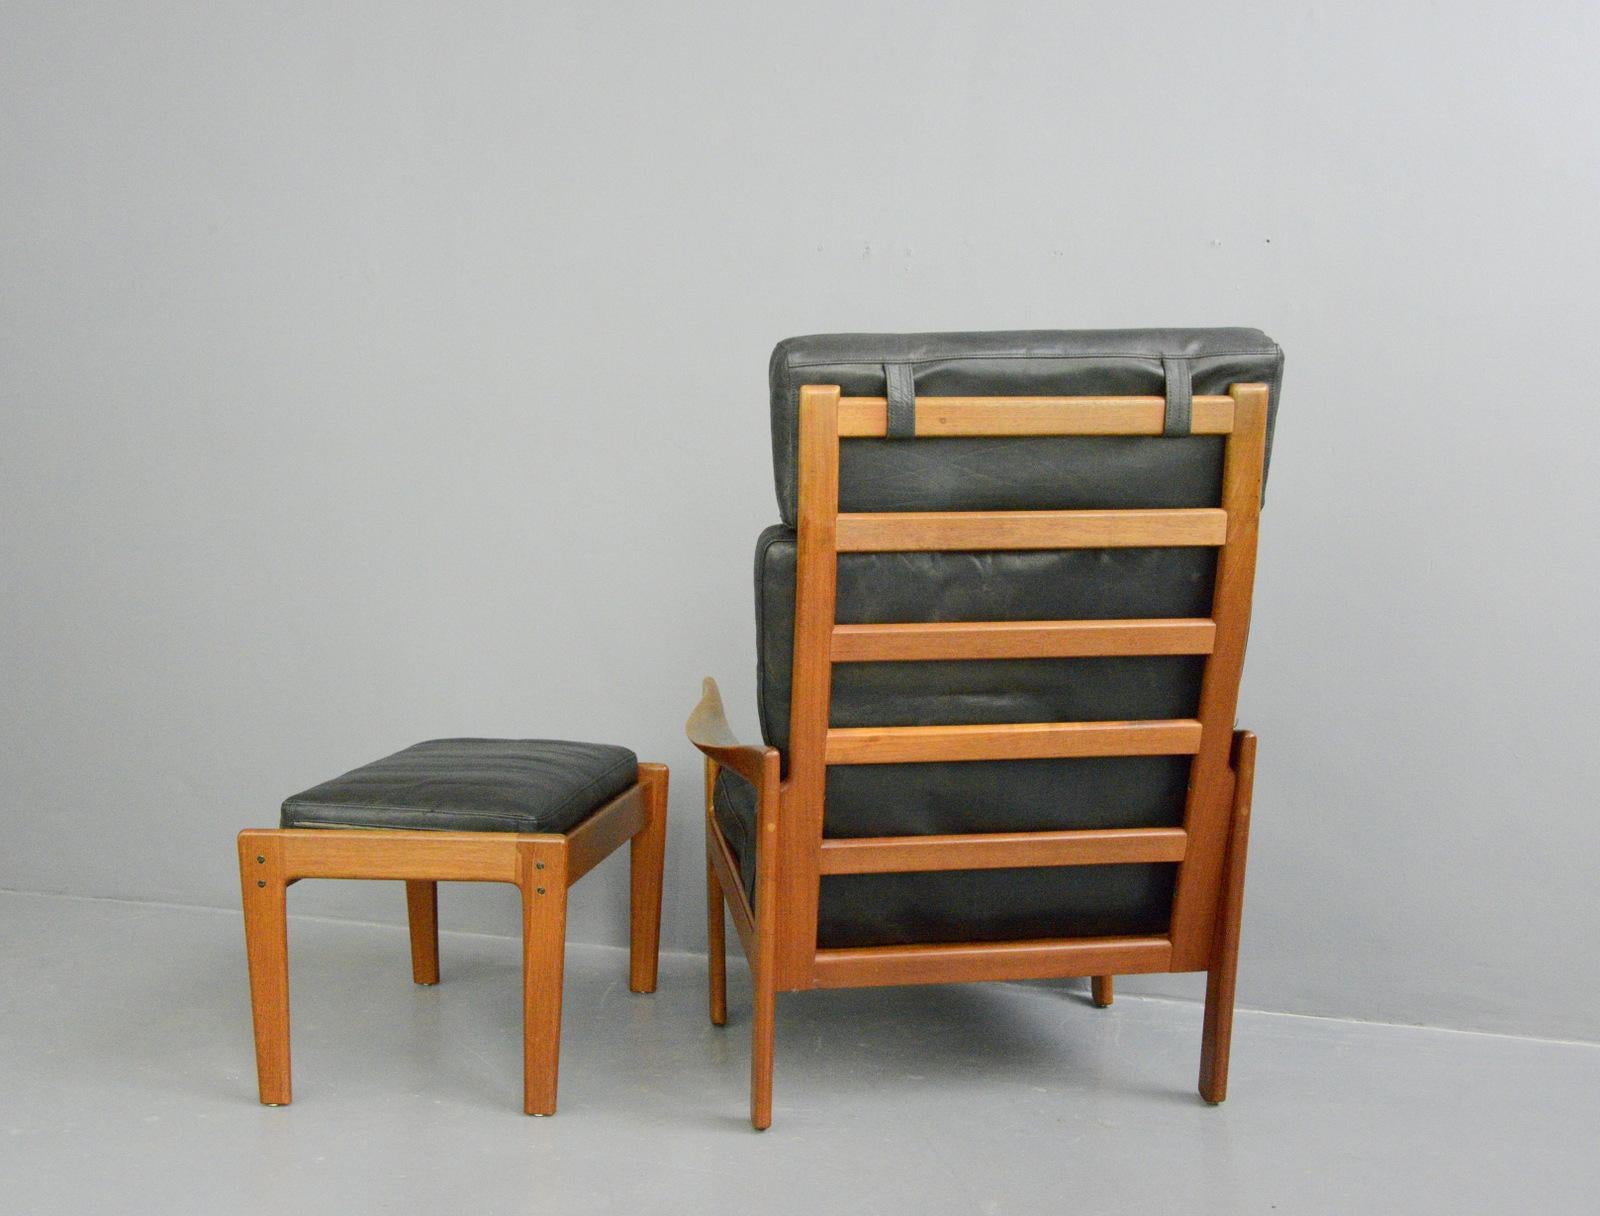 Scandinavian Modern Lounge Chair and Ottoman by Illum Wikkelsø, circa 1960s